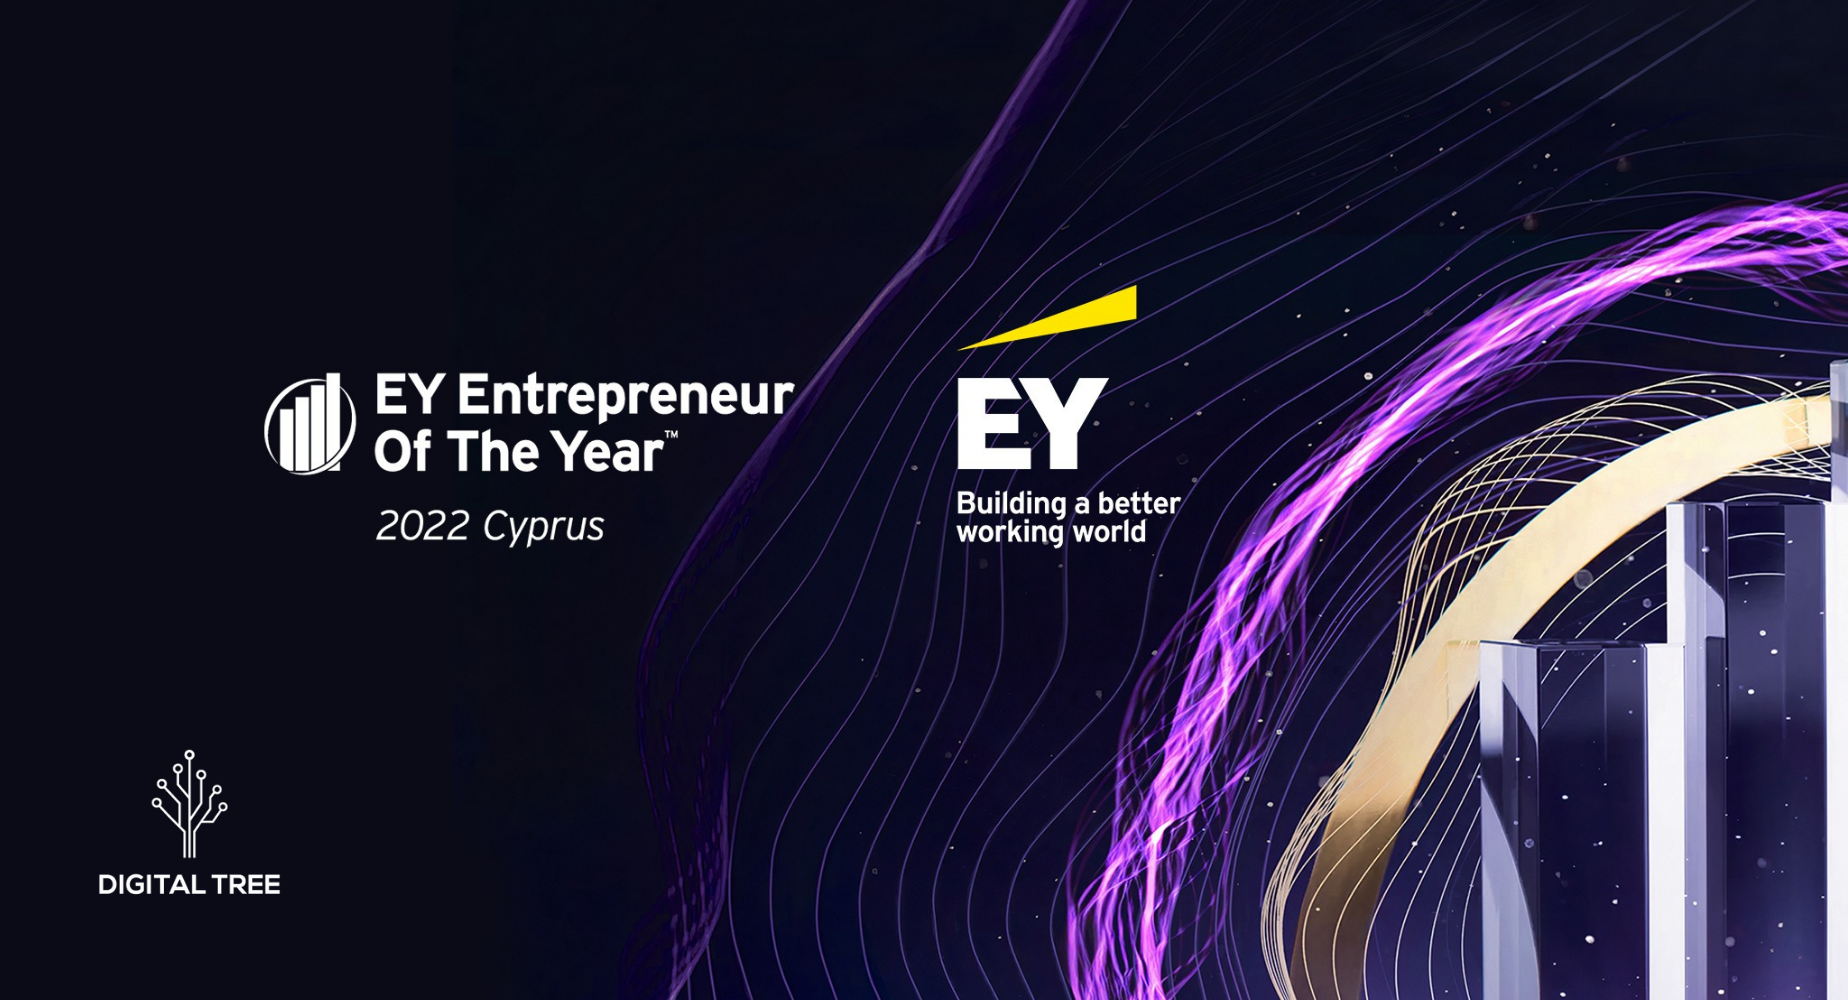 ey-entrepreneur-yeartm-cyprus-2022